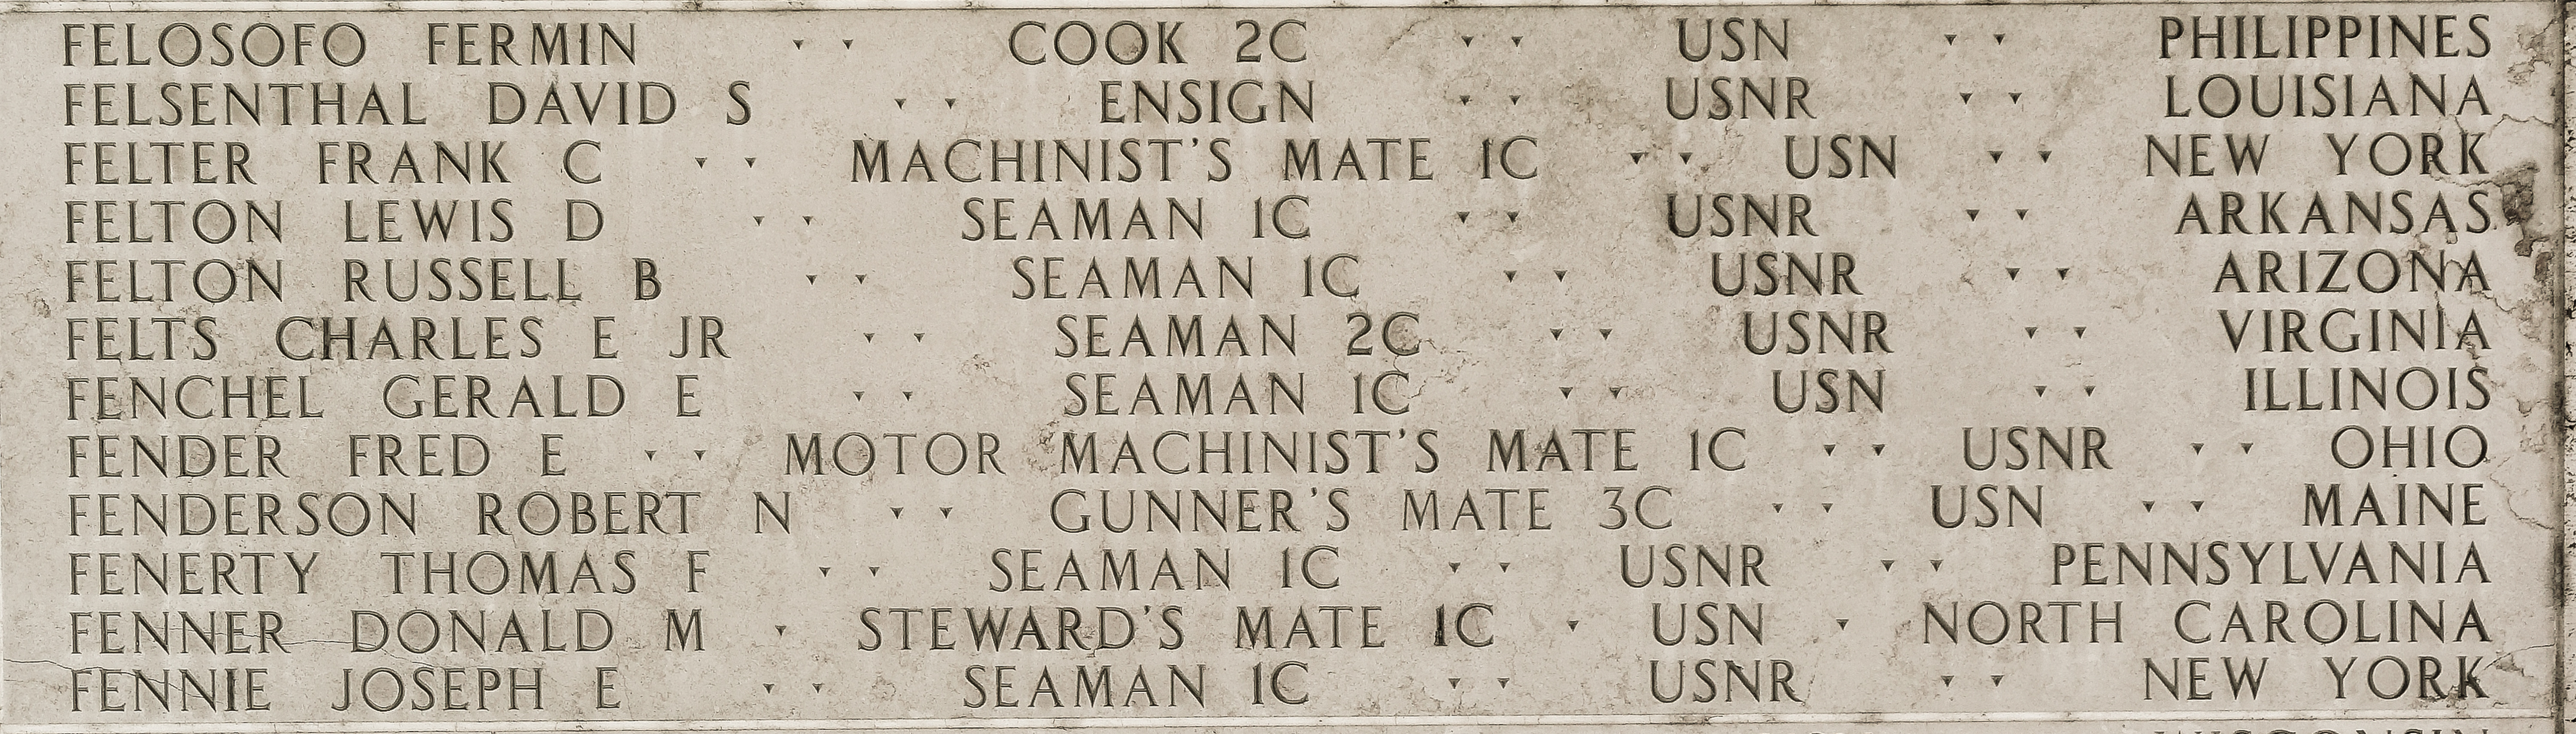 Joseph E. Fennie, Seaman First Class